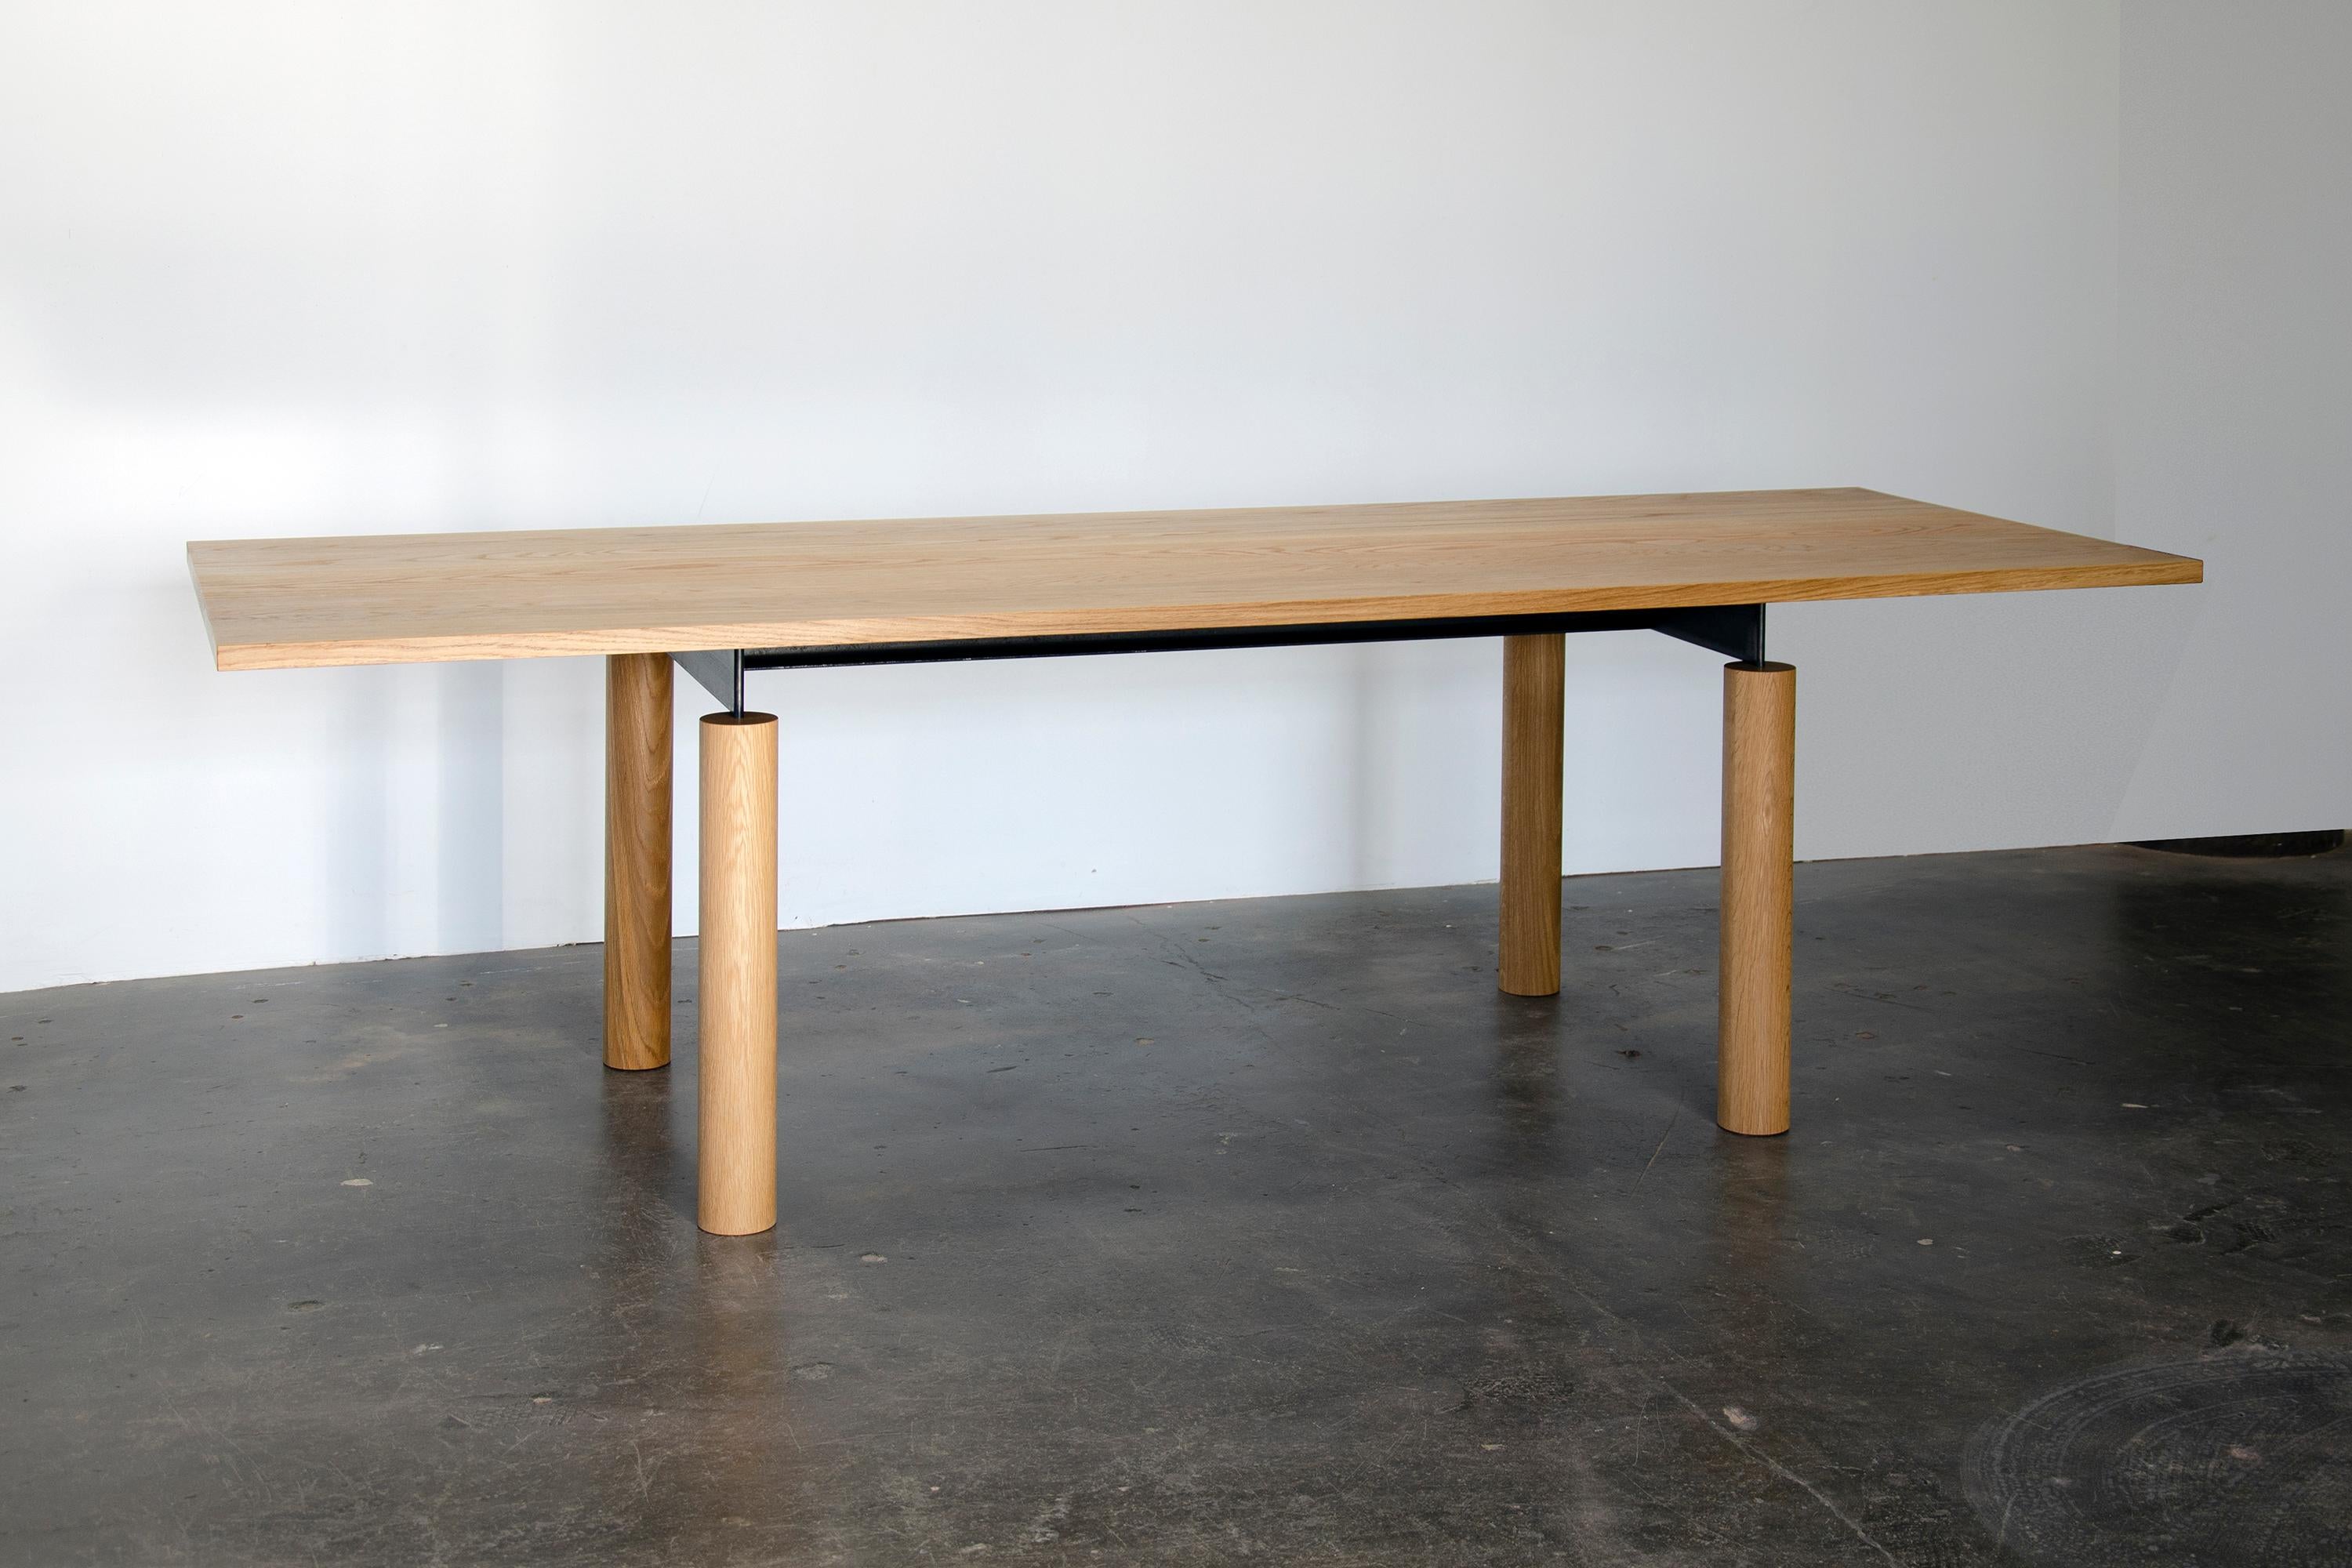 Overpass ist ein zeitgenössischer Tisch, der von den einfachen Formen und der robusten Konstruktion von Autobahnkreuzen inspiriert ist. Ein geschwärztes Stahlgestell, das die natürliche Schönheit von Massivholz in den Vordergrund stellt, verbindet